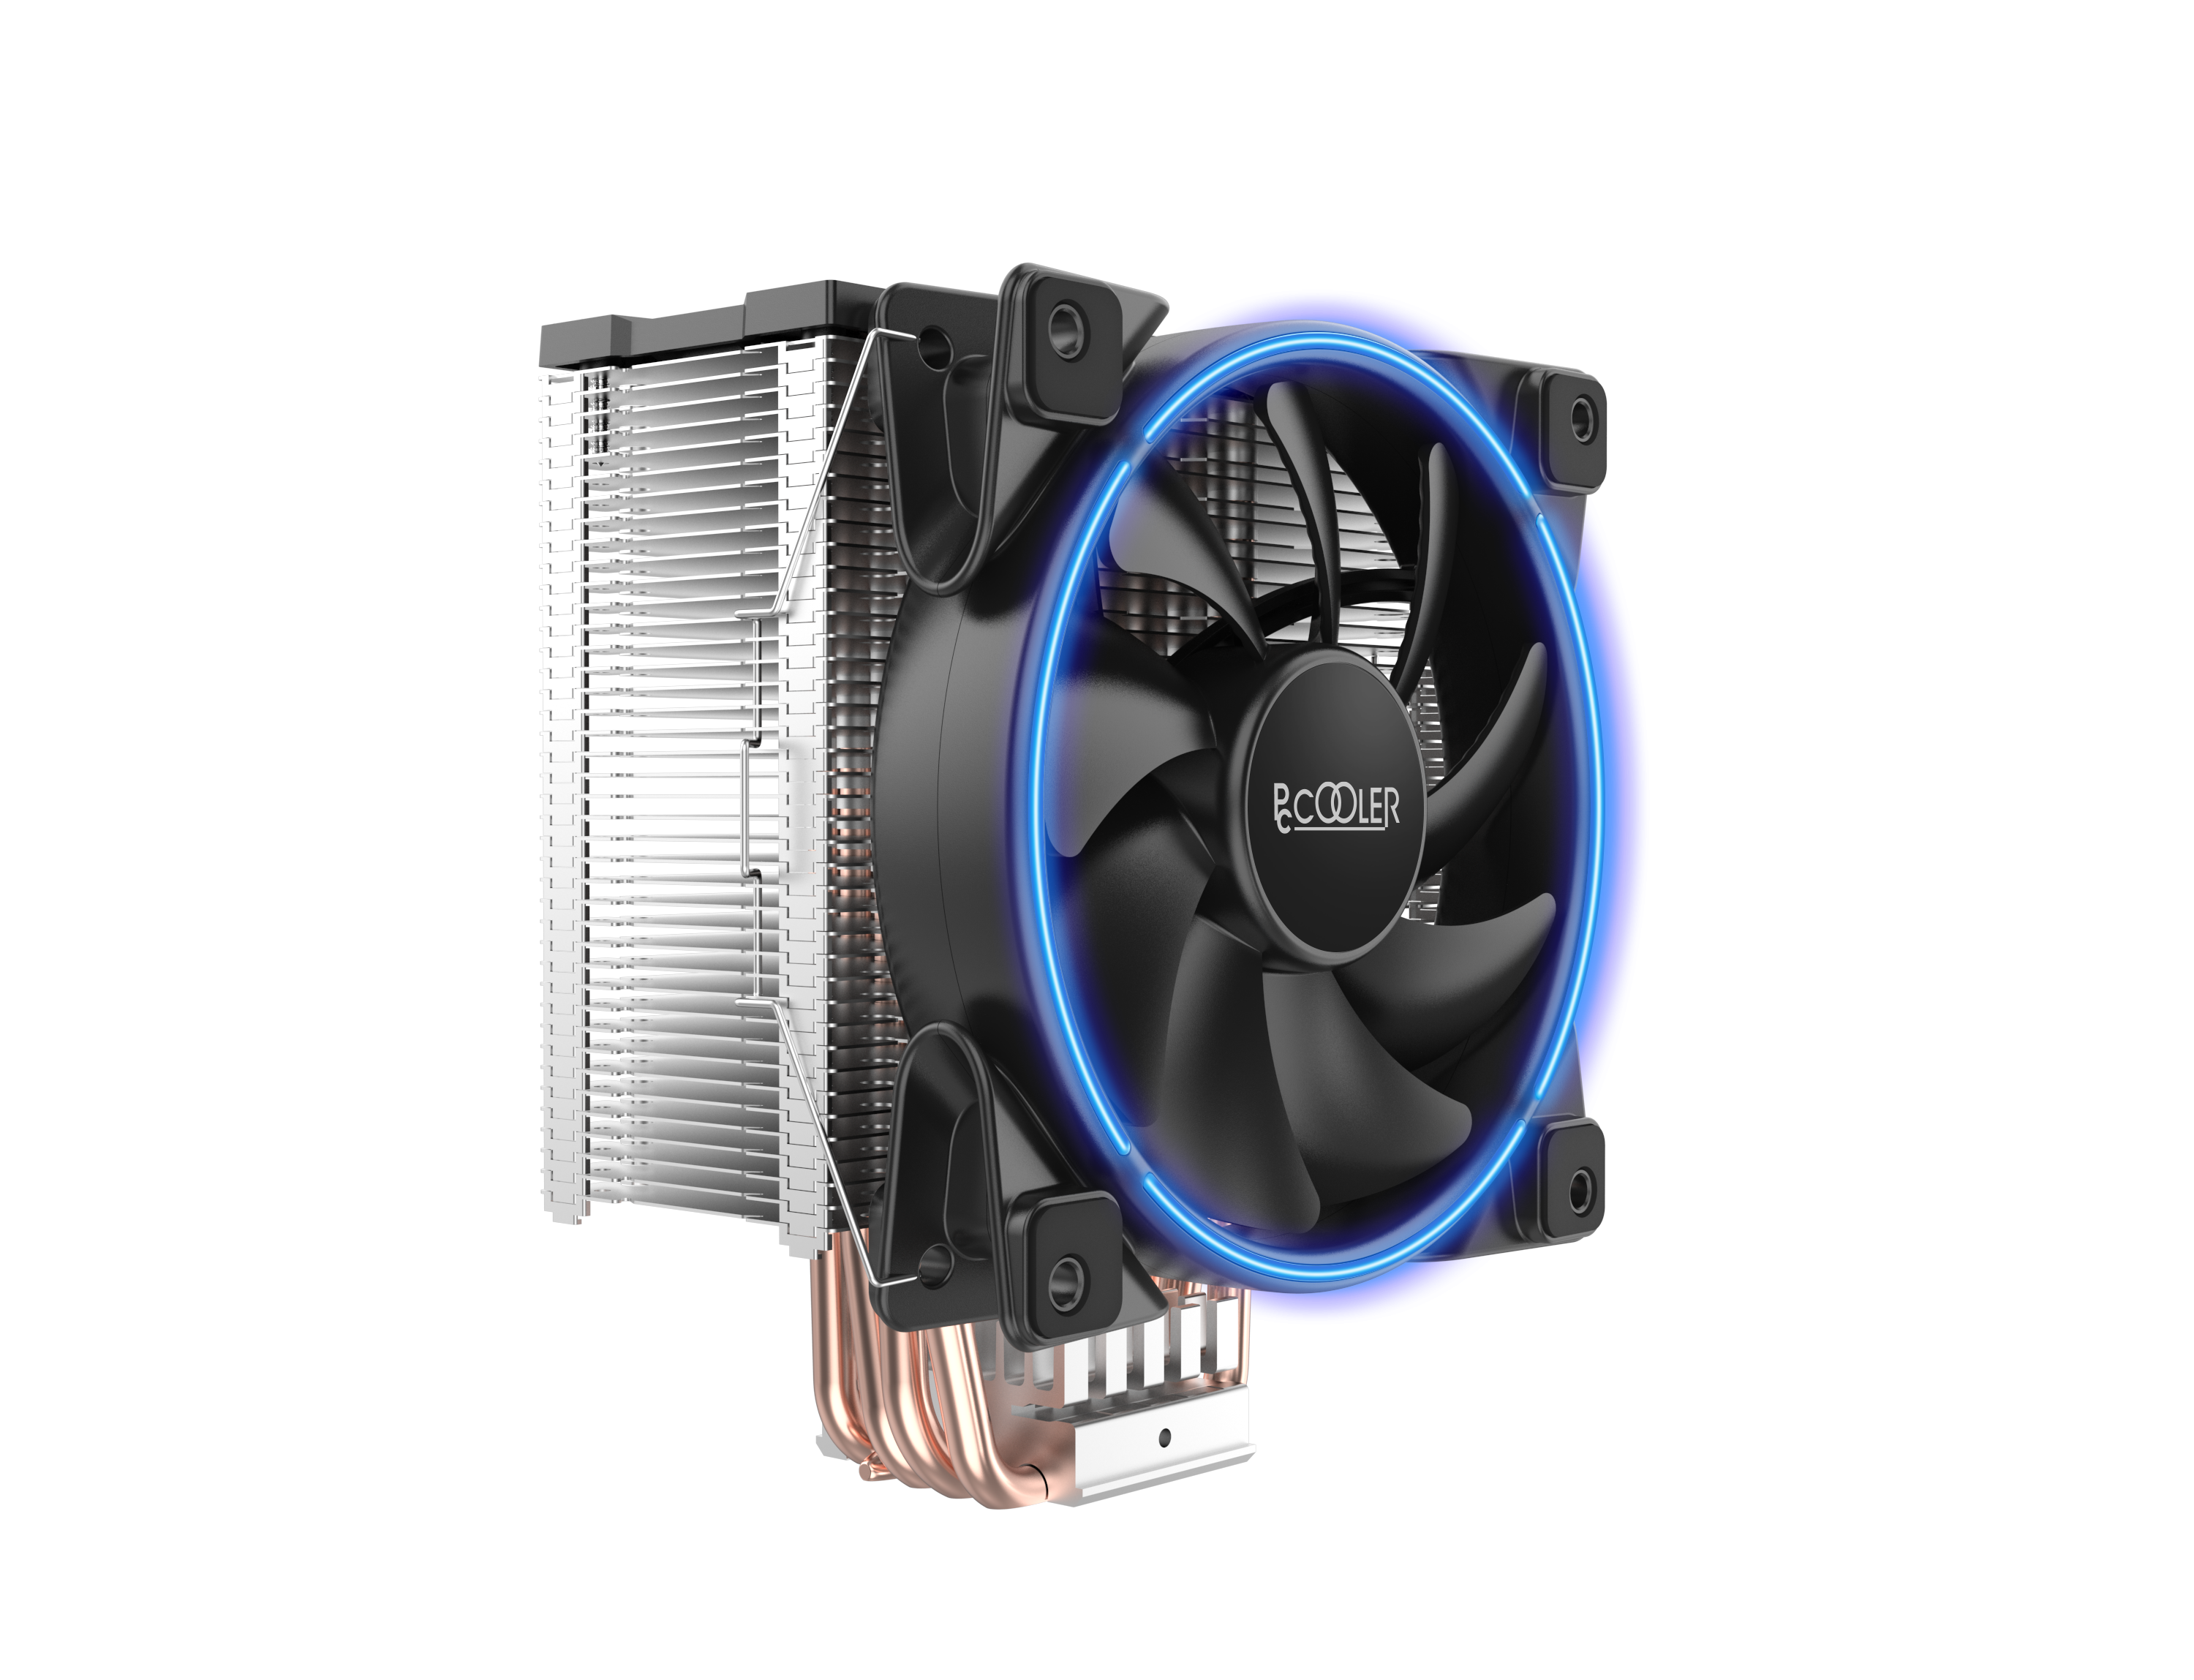 GI-X5B CPU Kühler leuchtet in Blau - Bild 1